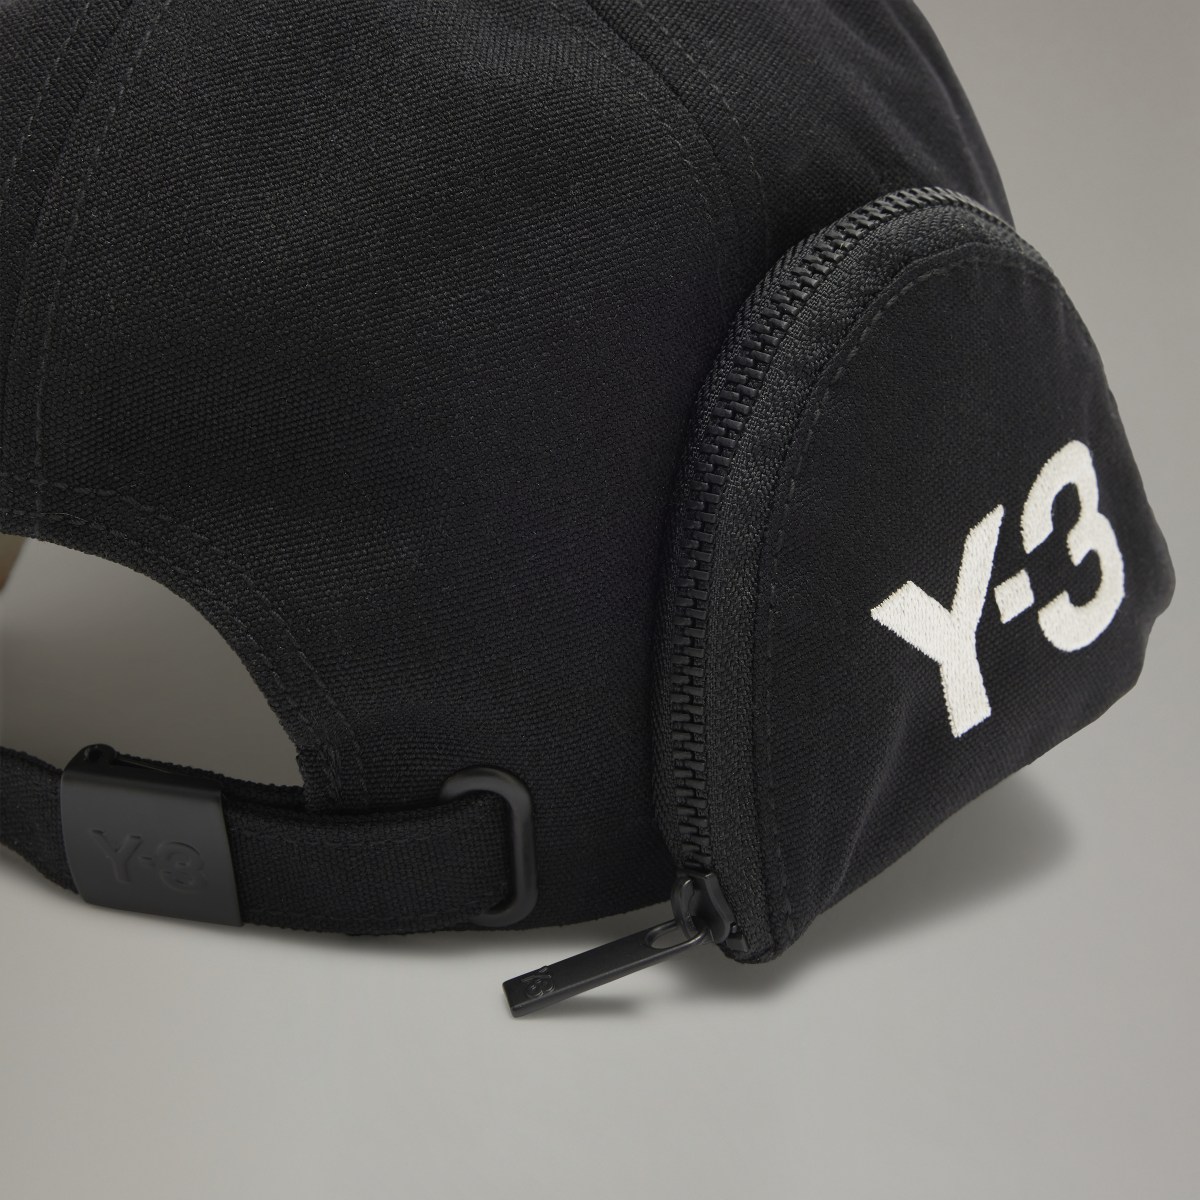 Adidas Y-3 POCKET CAP. 6